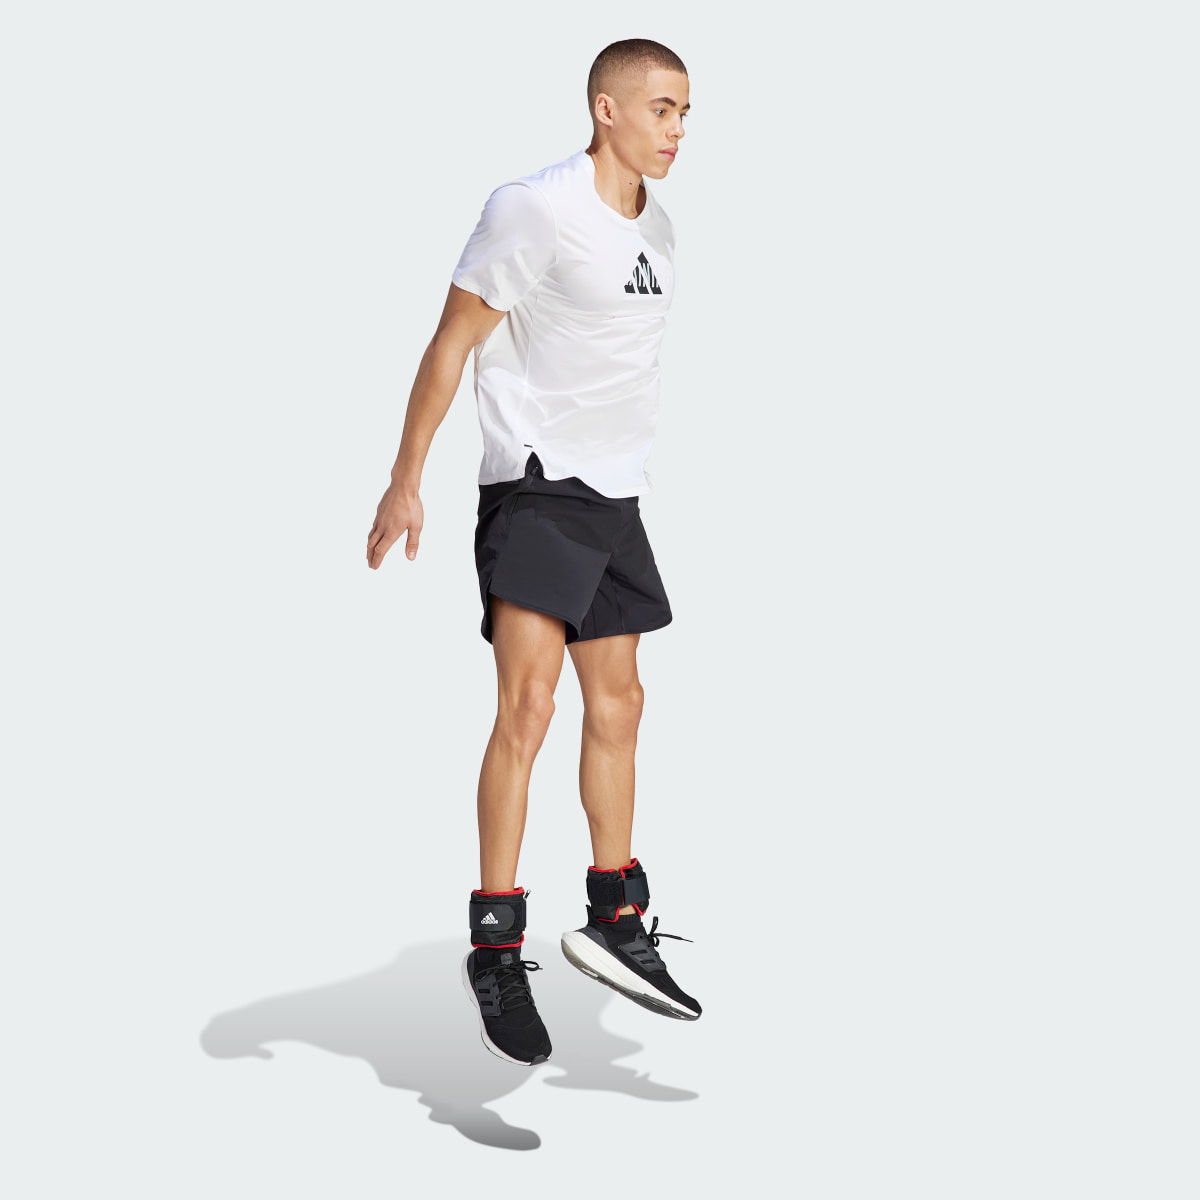 Adidas Designed 4 Training CORDURA Workout Shorts. 4